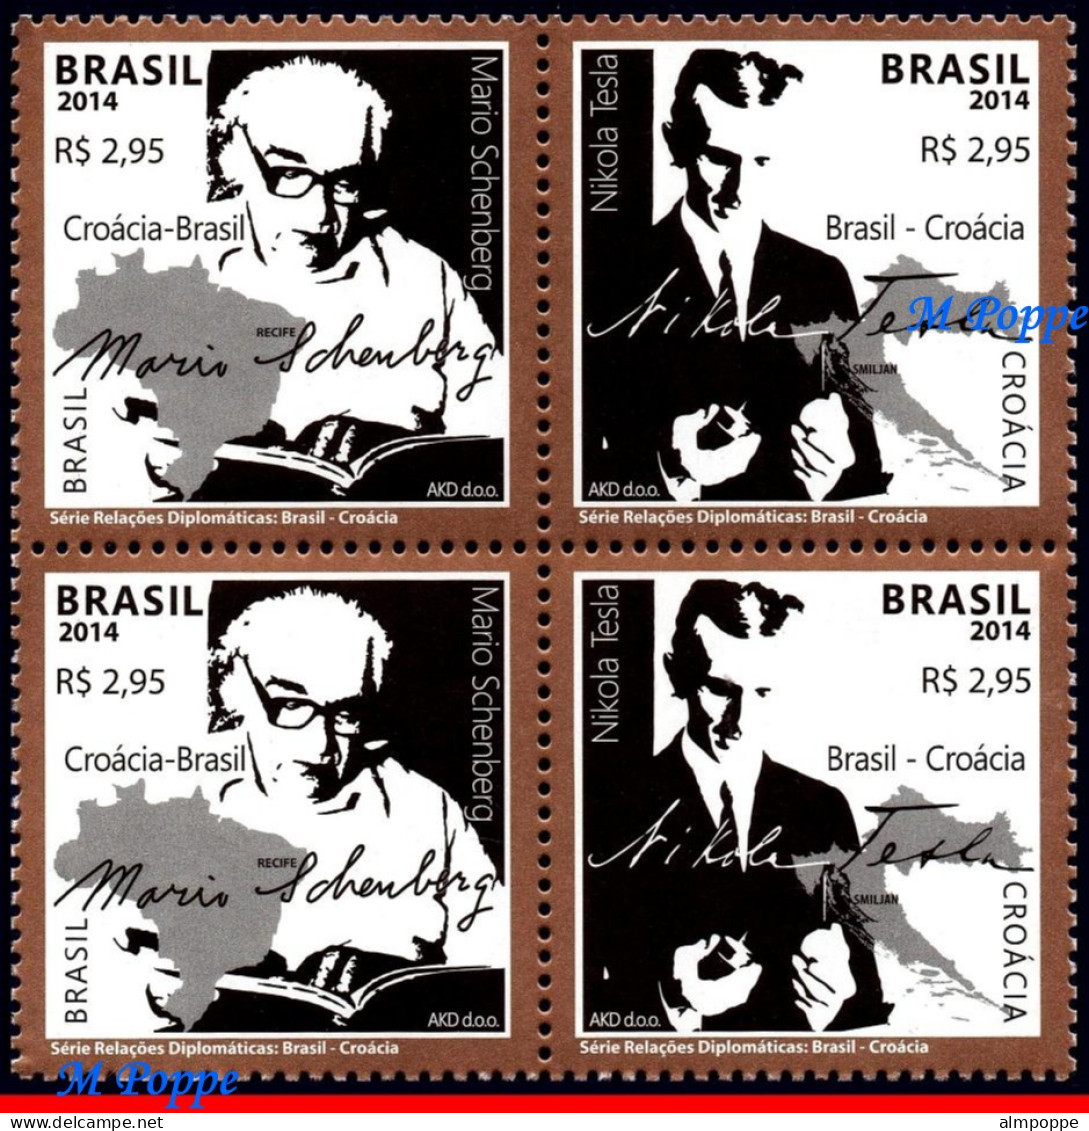 Ref. BR-3286-Q BRAZIL 2014 - RELATIONSHIP WITH CROATIA, M�RIO SCHENBERG & NIKOLA TESLA, MNH, FAMOUS PEOPLE 4V Sc# 3286 - Blokken & Velletjes